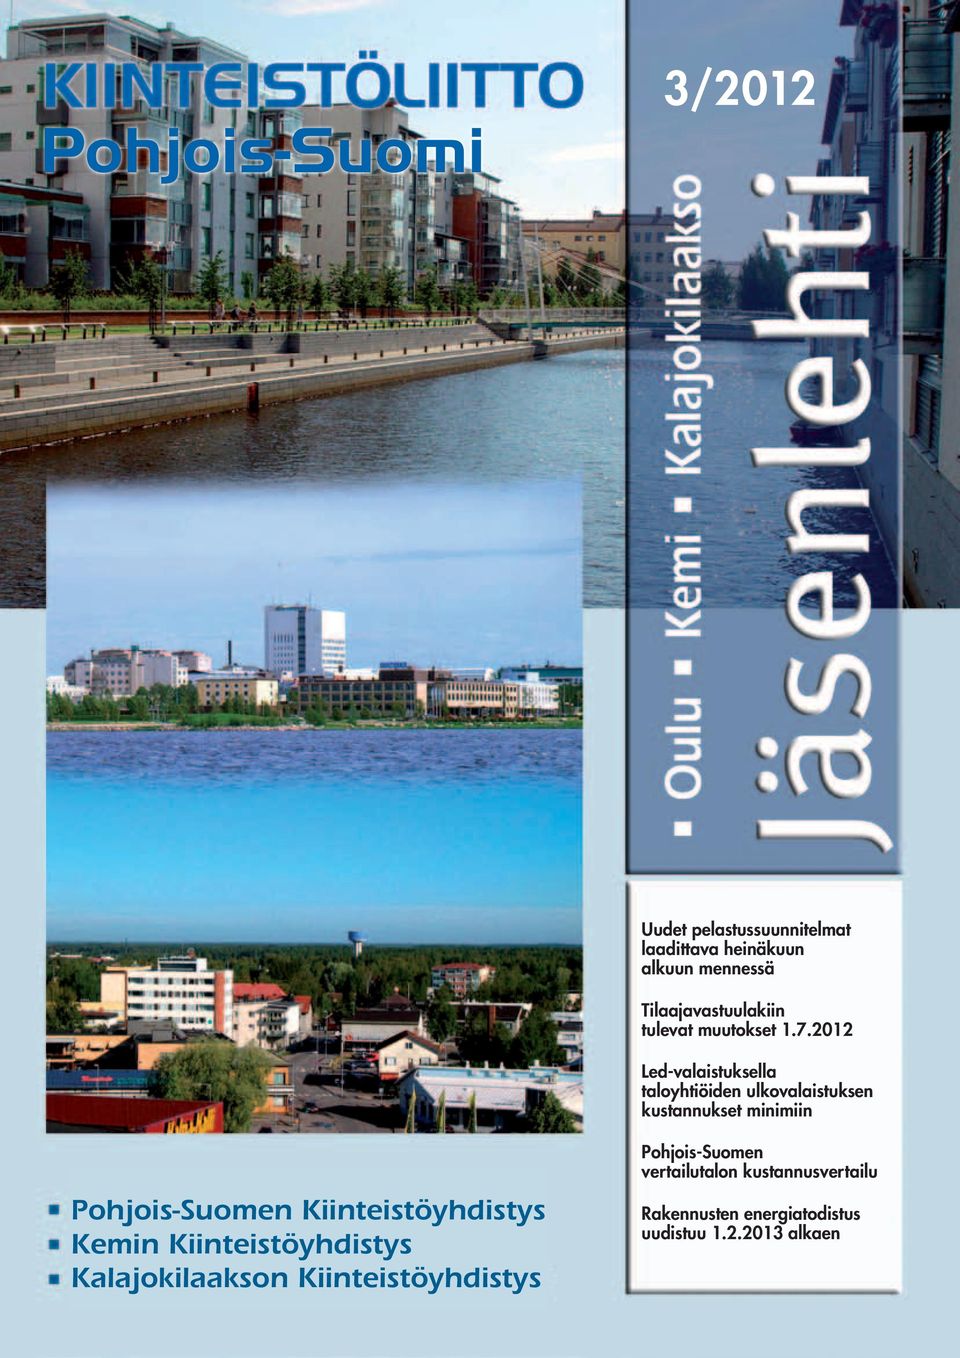 2012 Led-valaistuksella taloyhtiöiden ulkovalaistuksen kustannukset minimiin Pohjois-Suomen